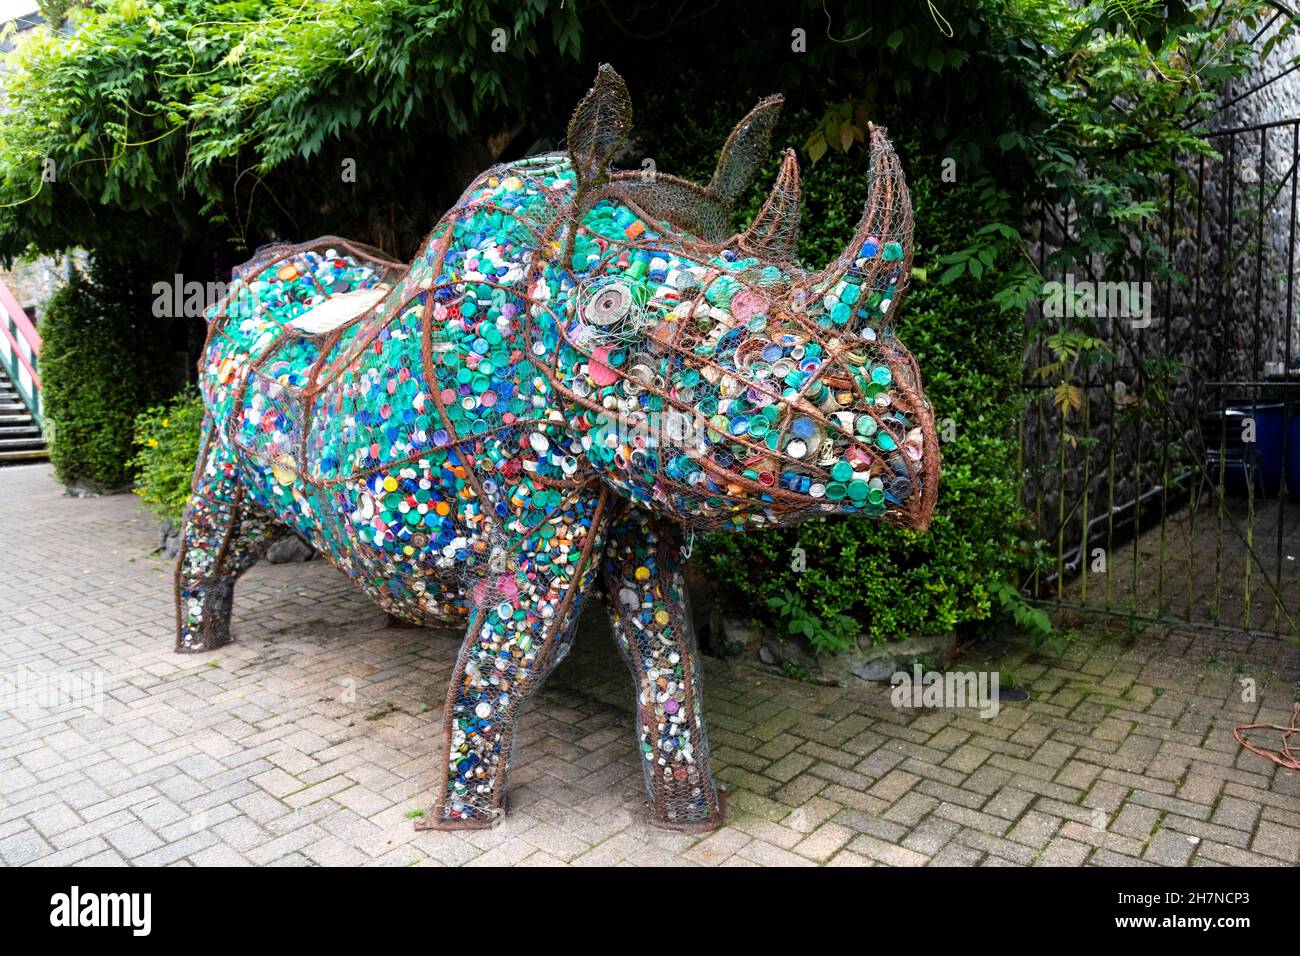 Sculpture de rhinocéros en fil de fer remplie de bottops en plastique, faisant partie d'un projet d'art communautaire, Betws y Coed train Station, Snowdonia, pays de Galles, Royaume-Uni Banque D'Images